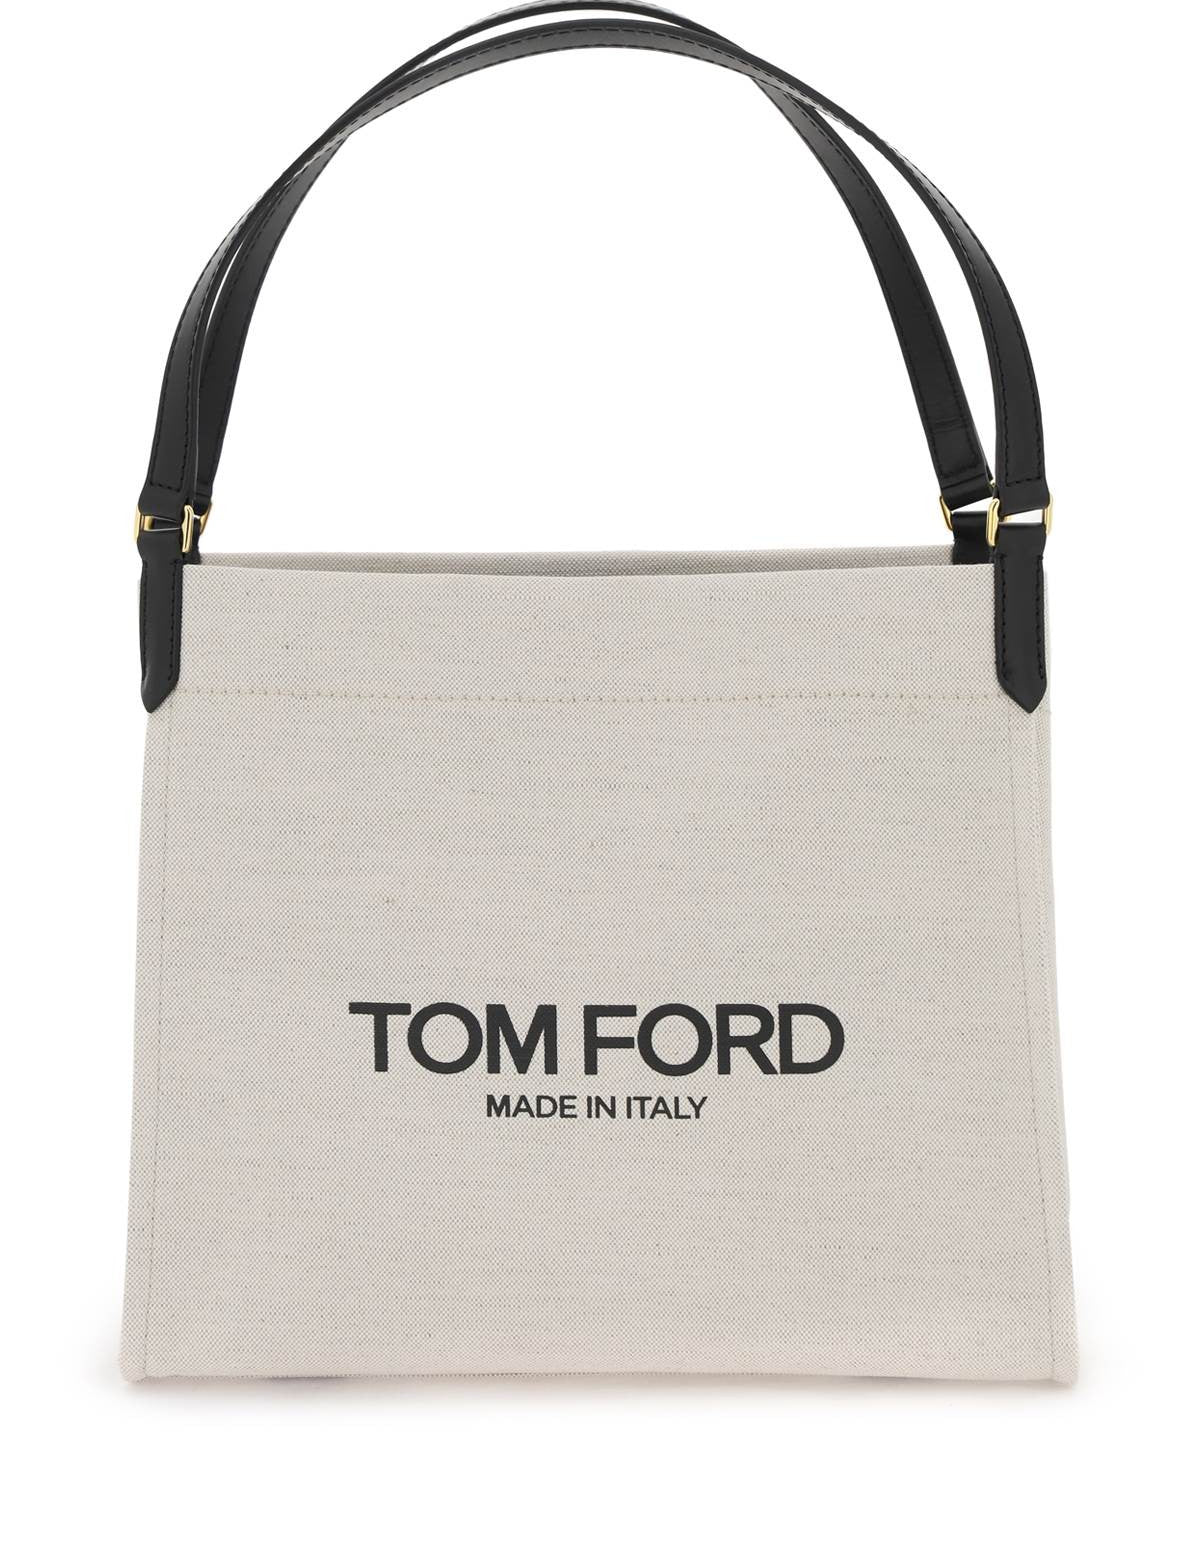 tom-ford-amalfi-tote-bag.jpg